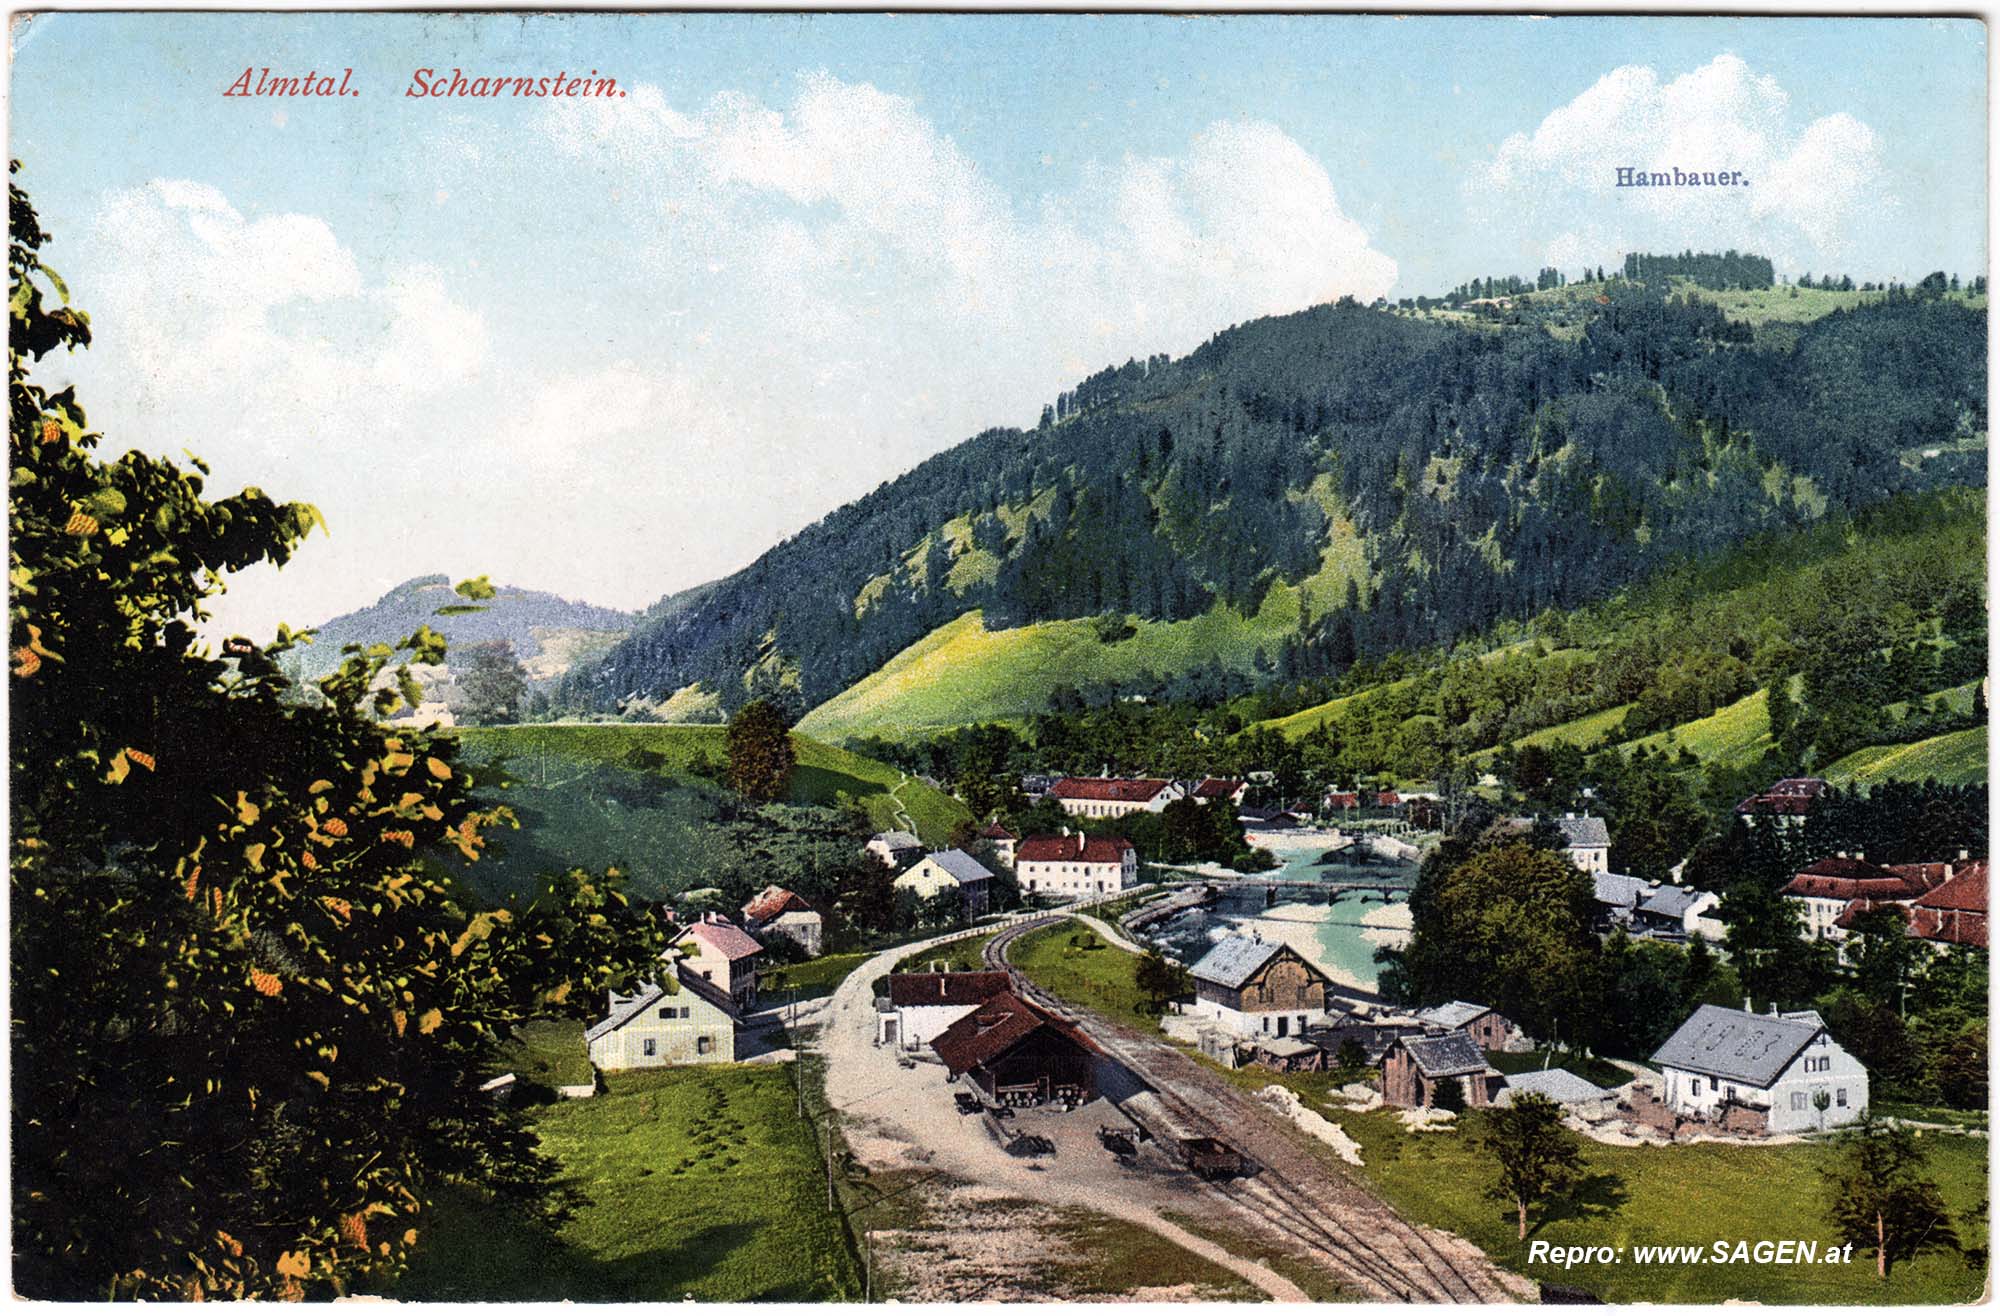 Almtal, Scharnstein